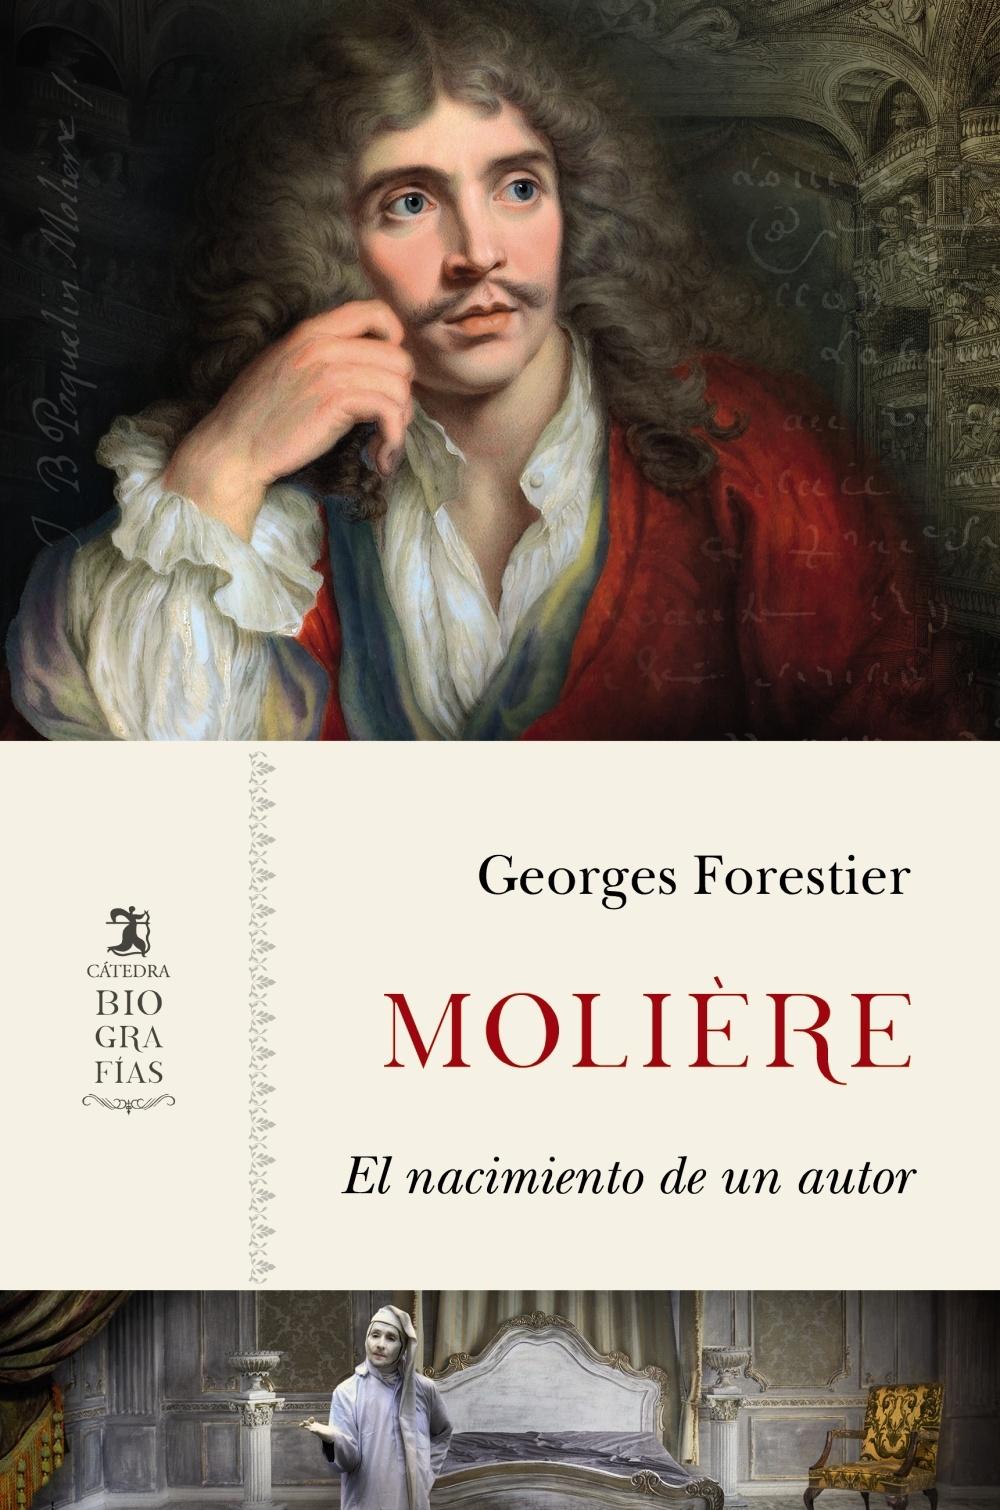 Molière "El nacimiento de un autor"